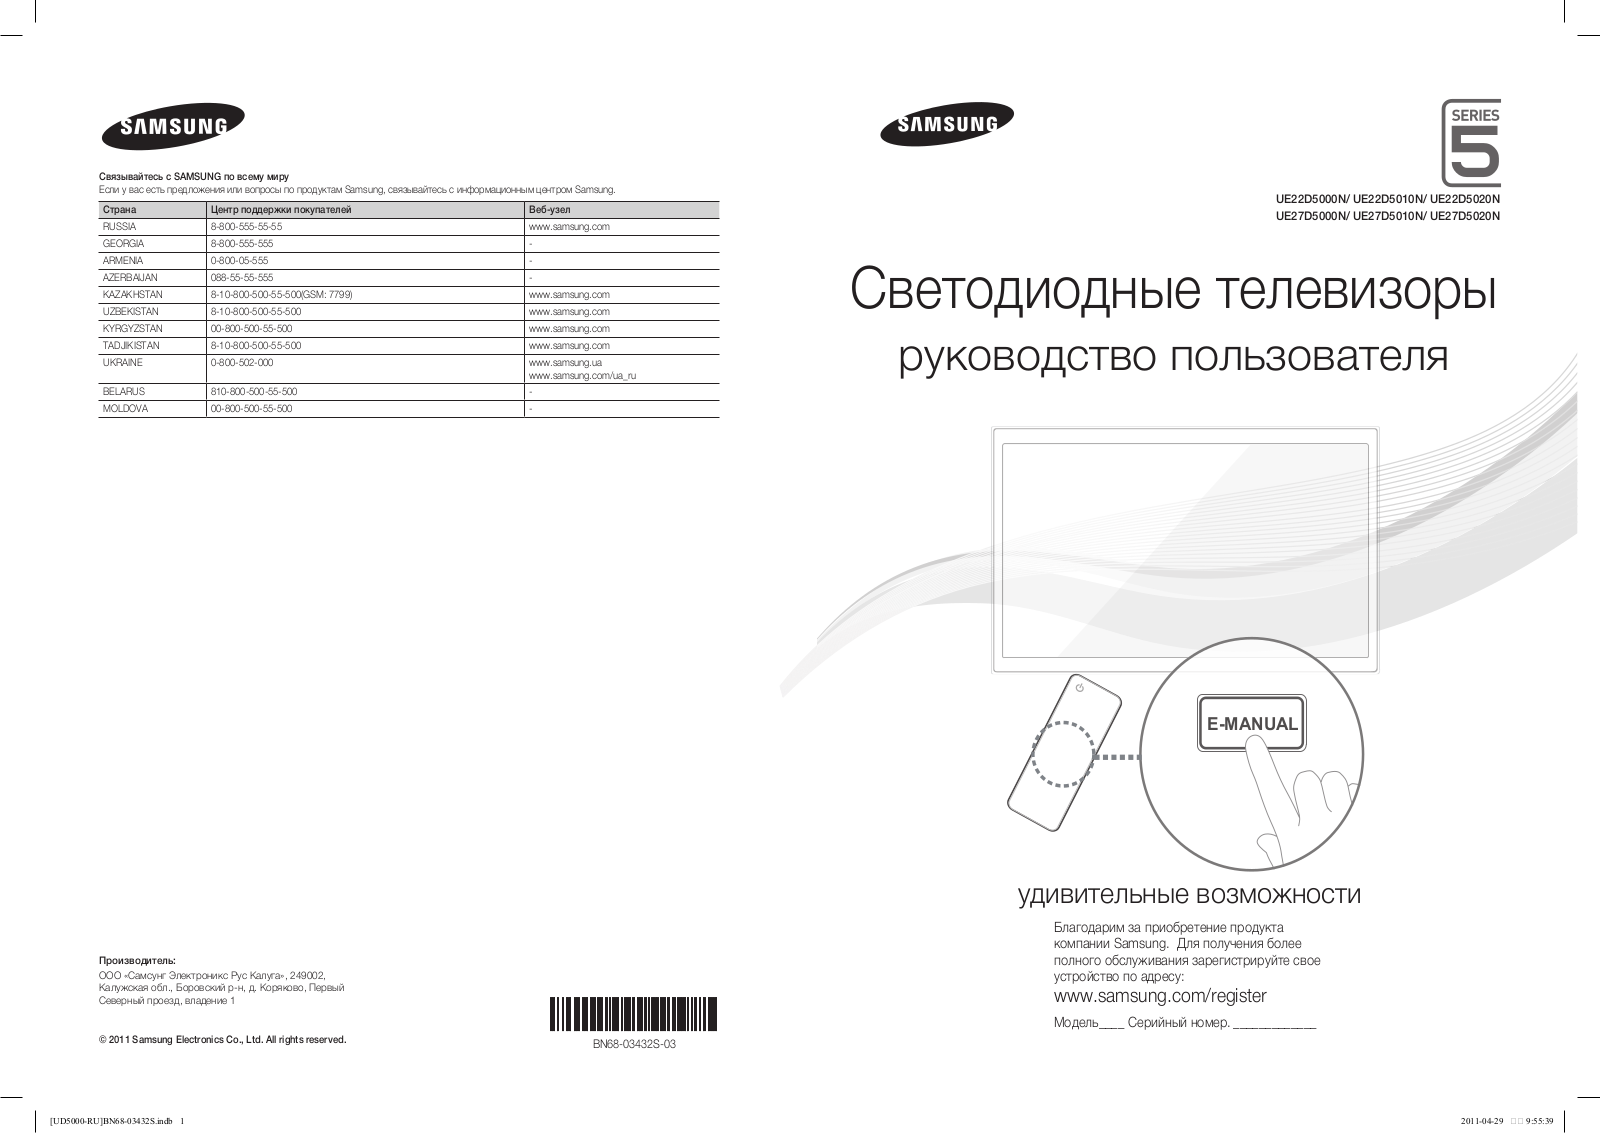 Samsung UE22D5000NW, UE27D5000, UE22D5010NW, UE27D5010NW User Manual